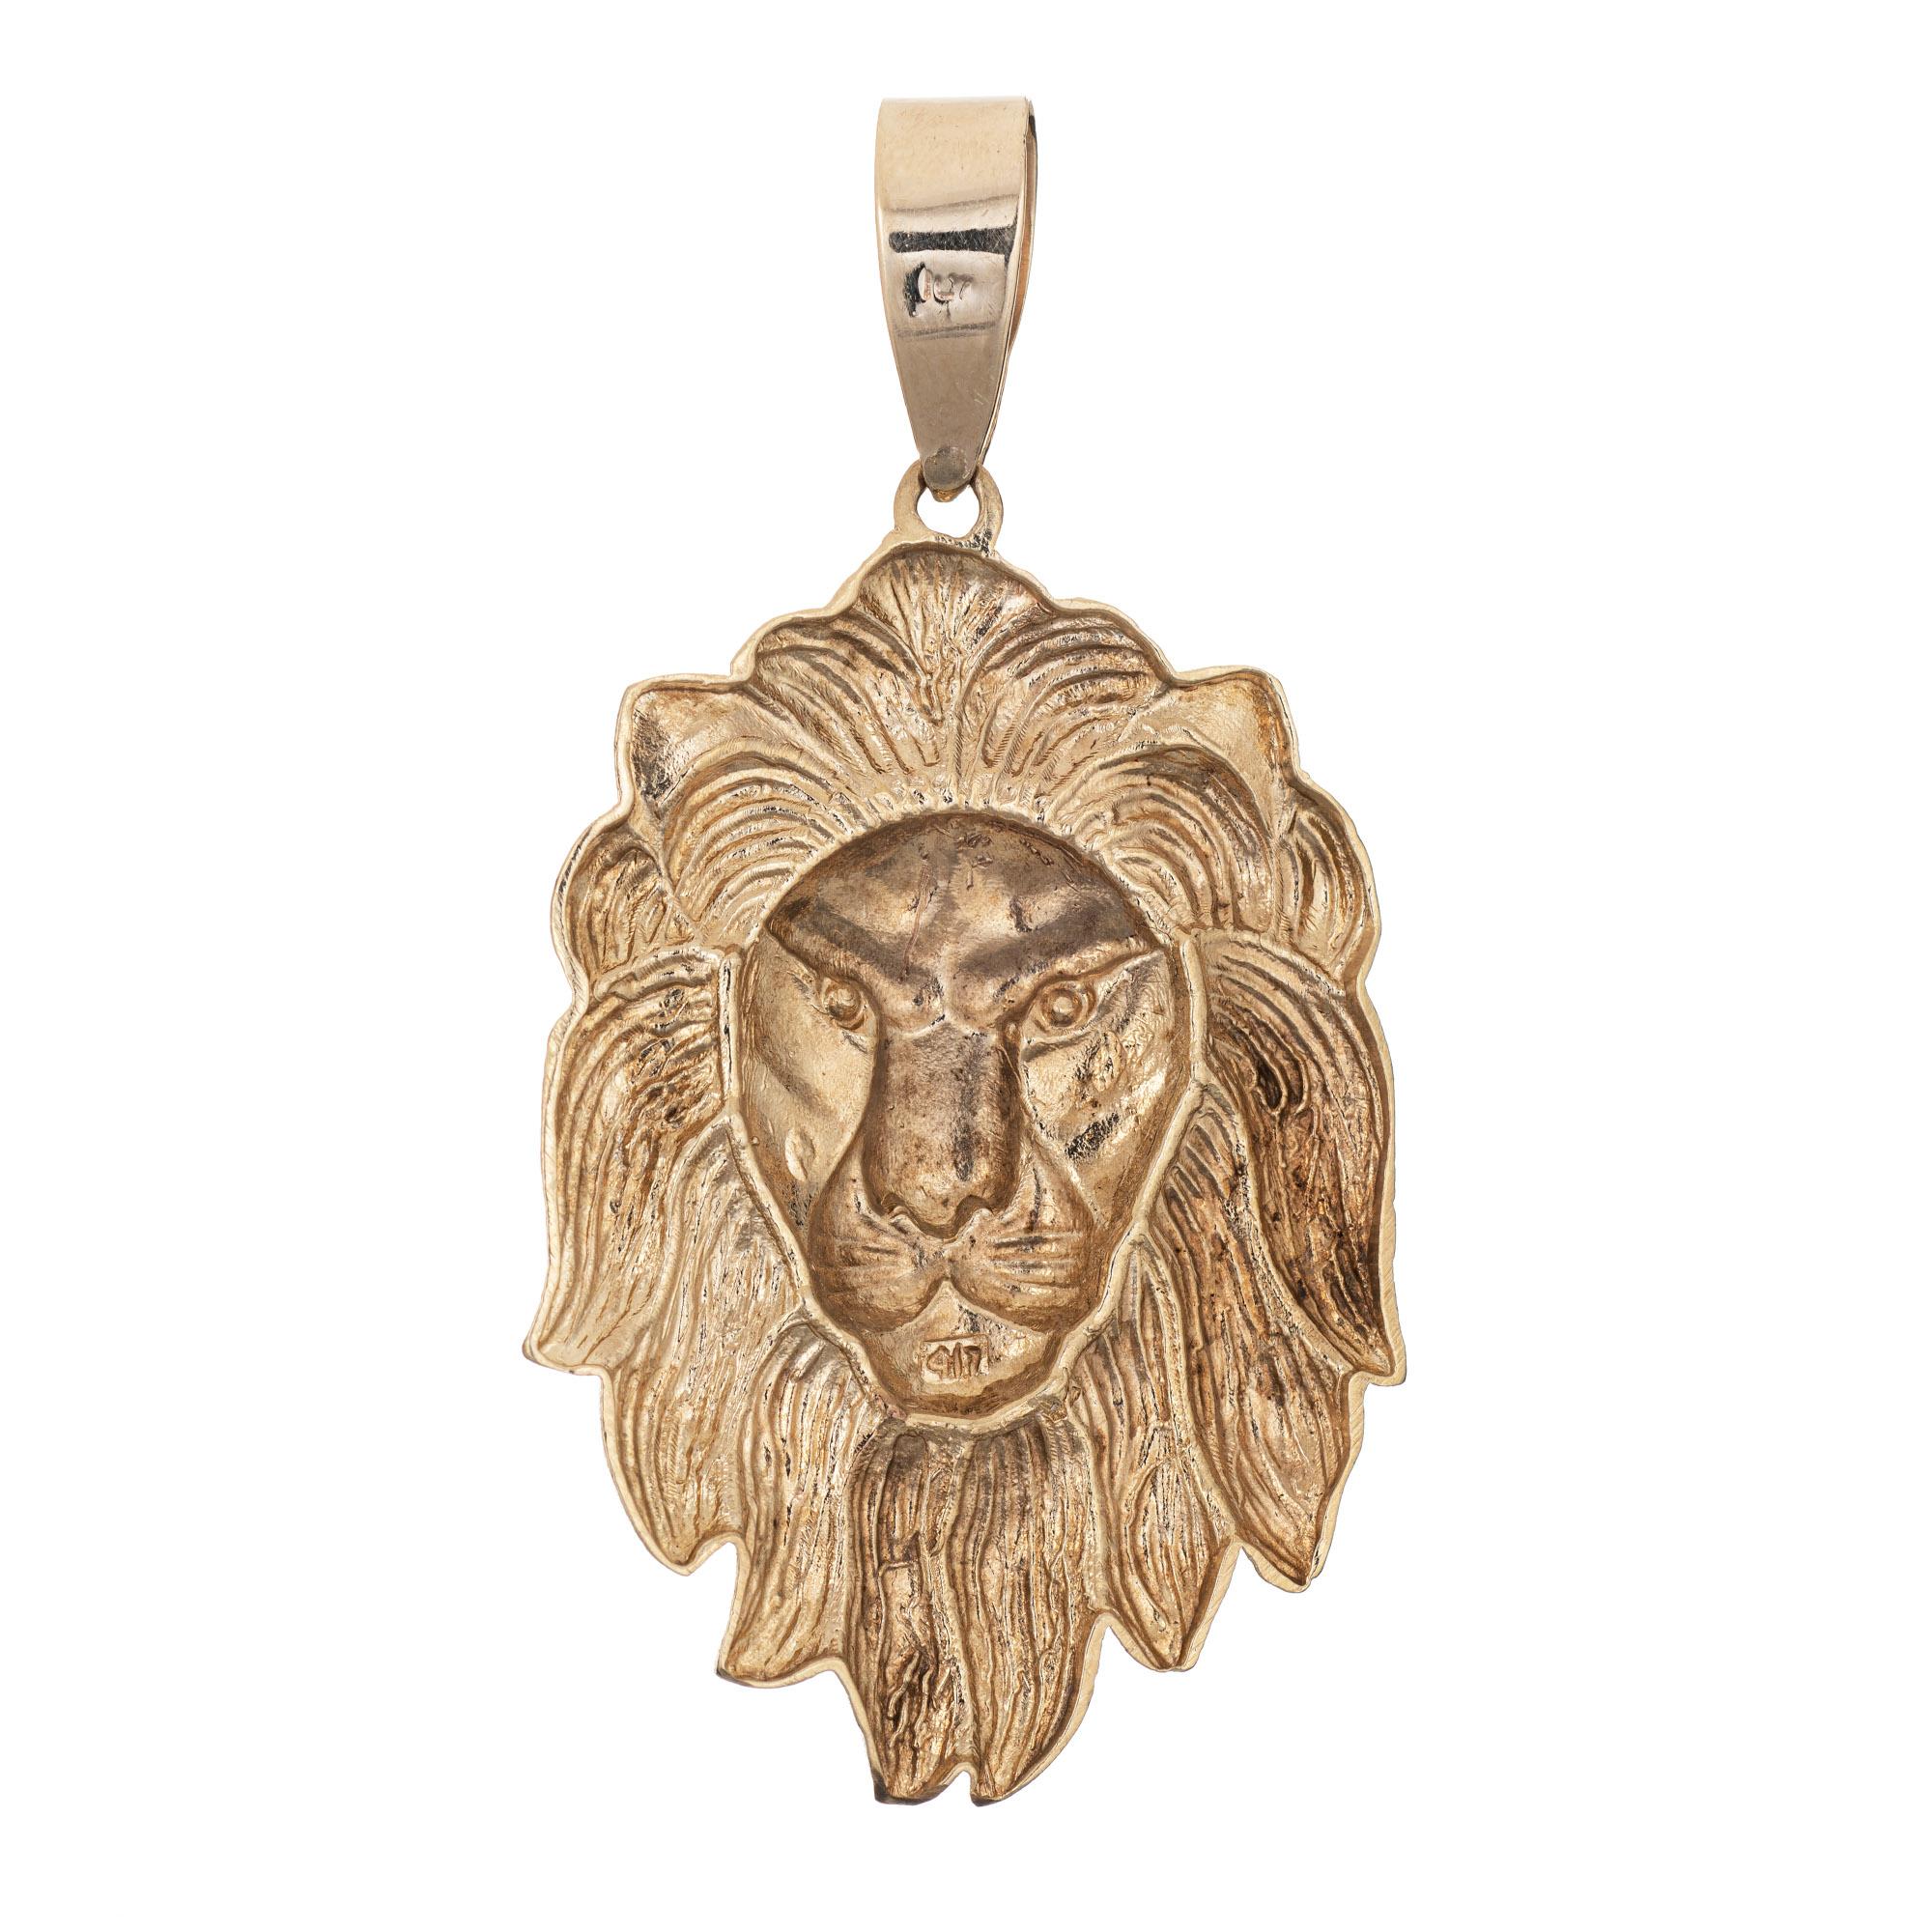 Grand pendentif lion finement détaillé en or jaune 10k (circa 1980-1990).  

Le grand pendentif (2 1/2 pouces) présente le visage d'un lion. Le pendentif élaboré est léger et a une apparence substantielle. Ce pendentif peut être porté seul, comme